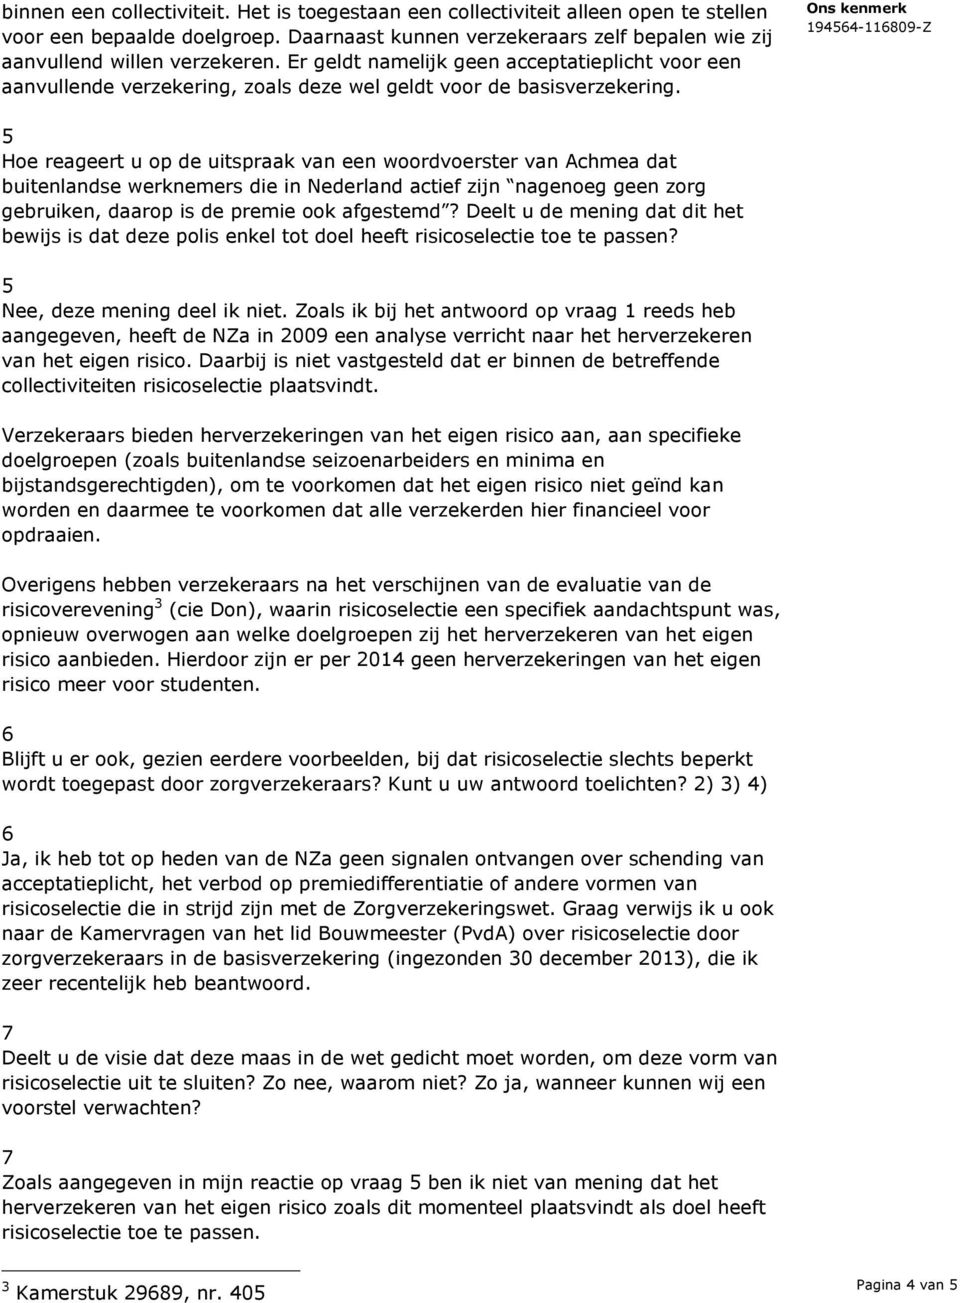 5 Hoe reageert u op de uitspraak van een woordvoerster van Achmea dat buitenlandse werknemers die in Nederland actief zijn nagenoeg geen zorg gebruiken, daarop is de premie ook afgestemd?